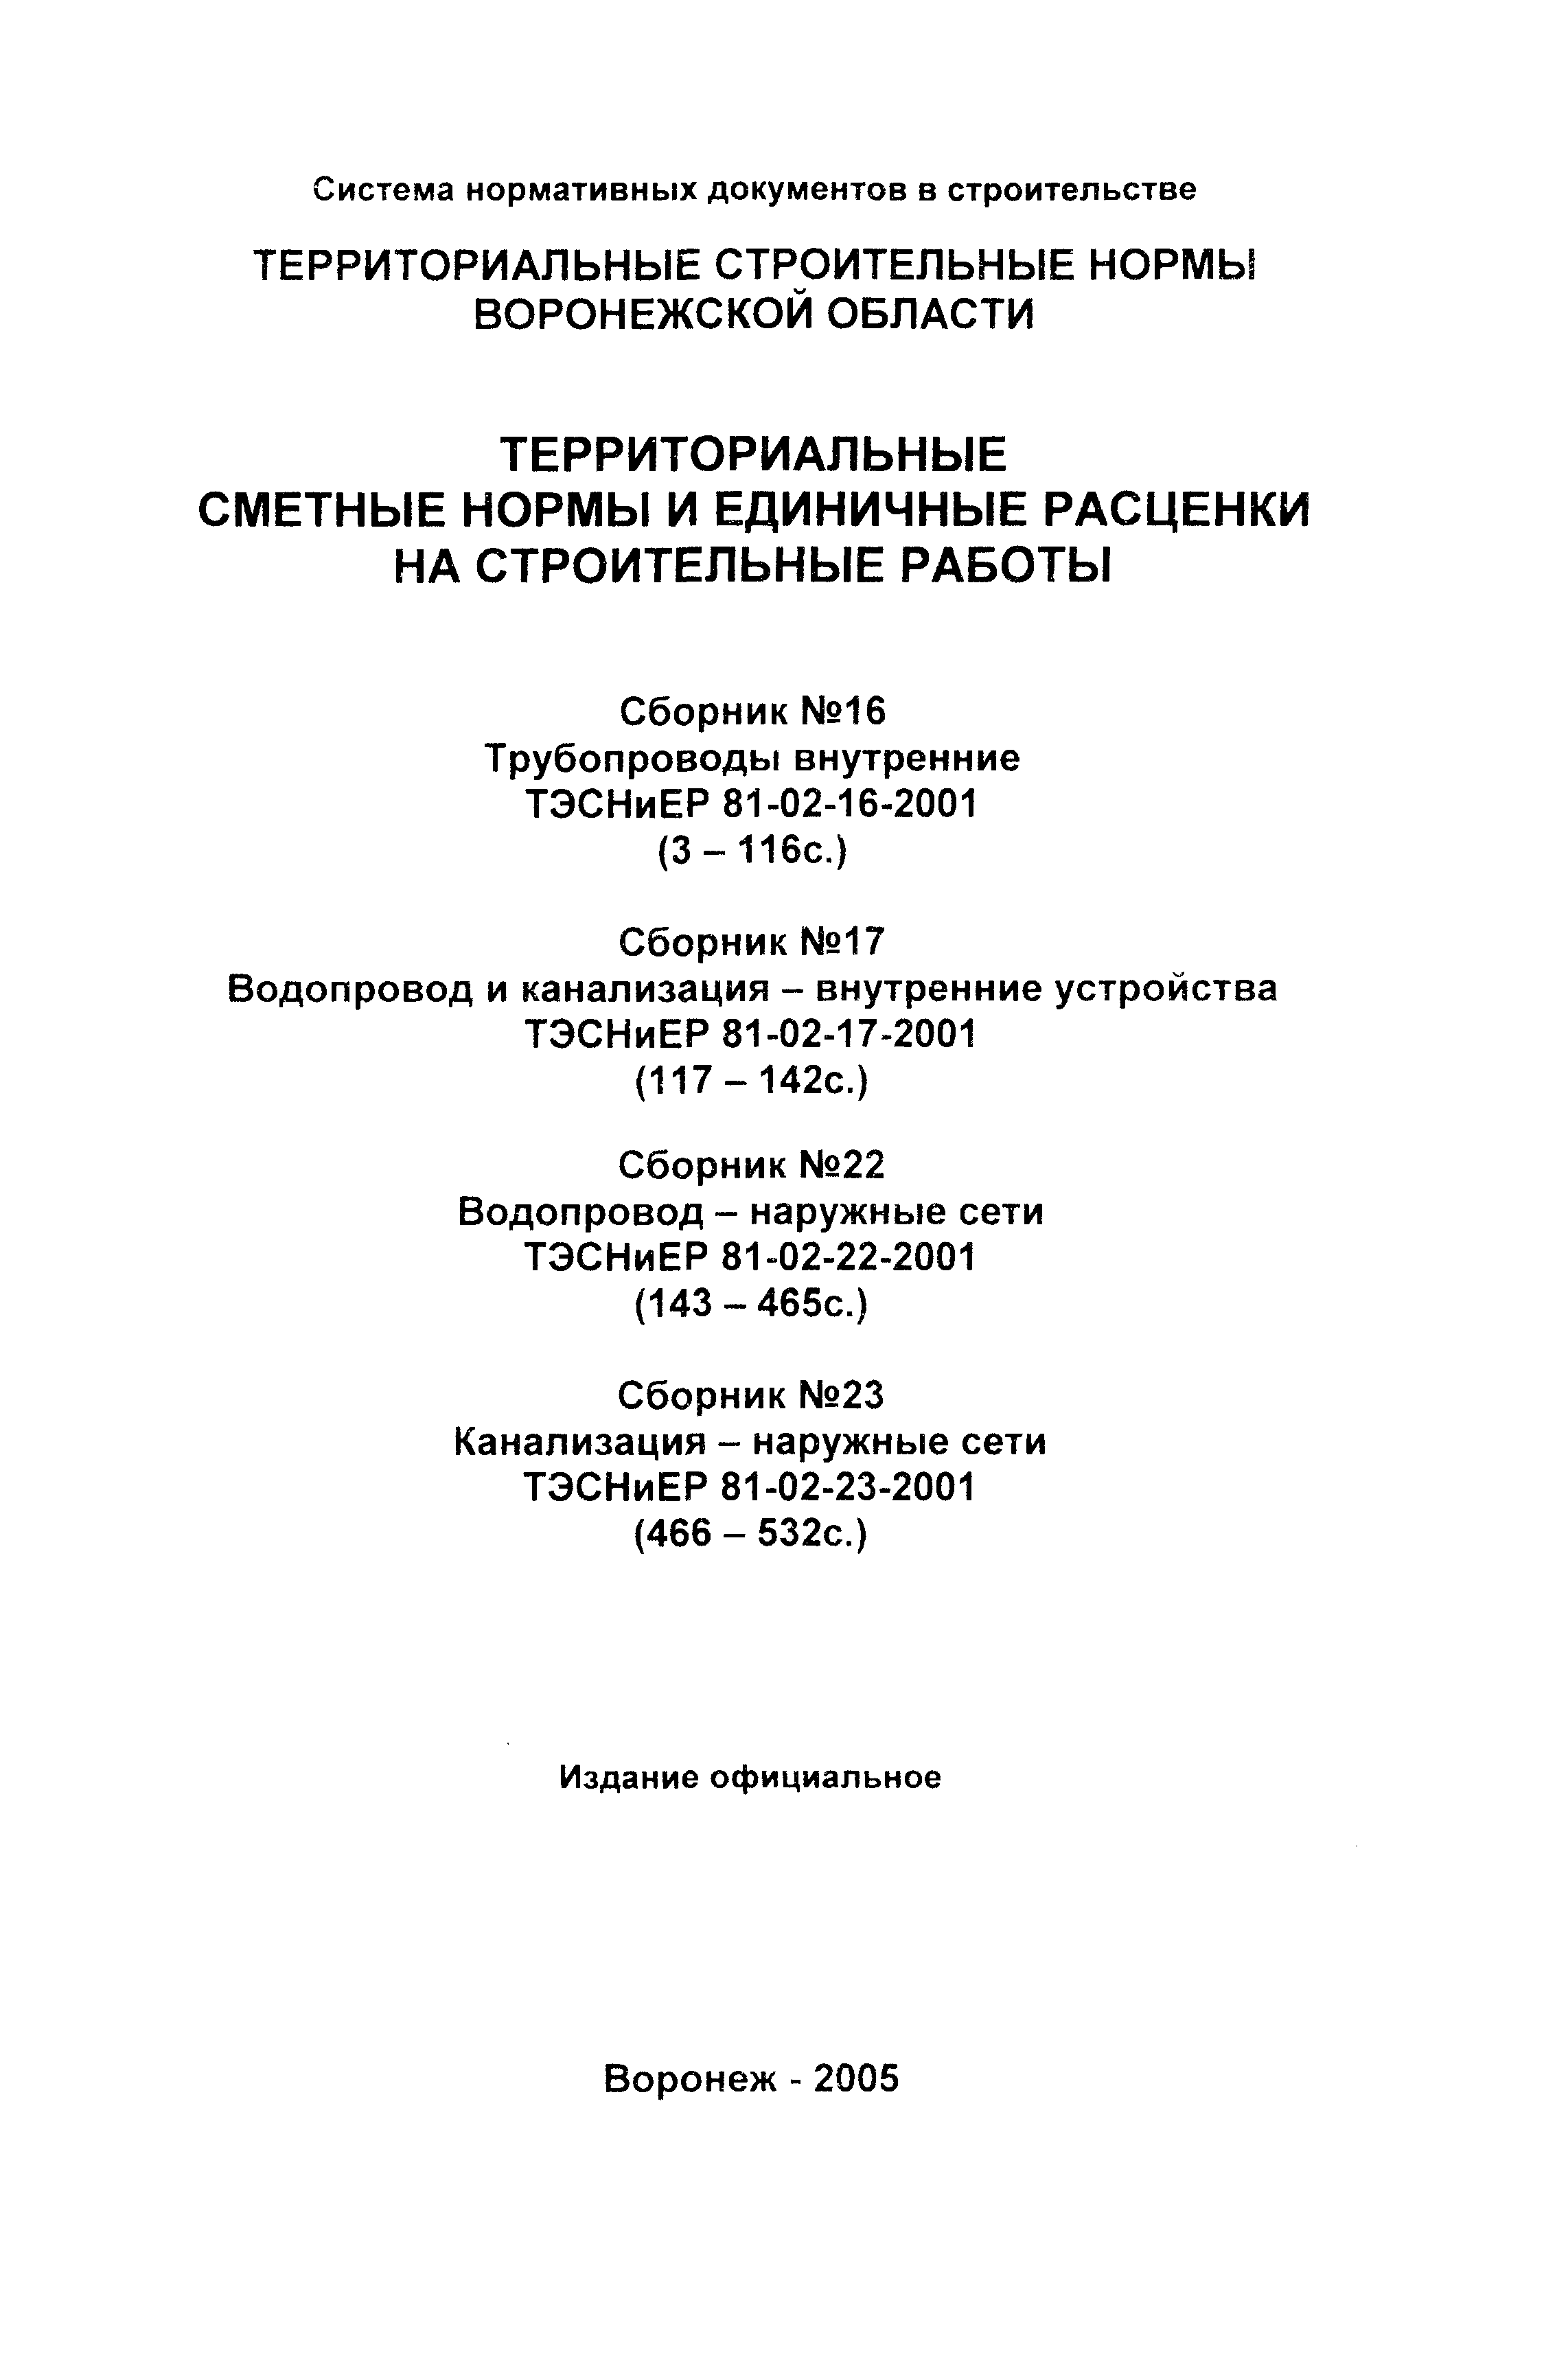 ТЭСНиЕР Воронежская область 81-02-16-2001